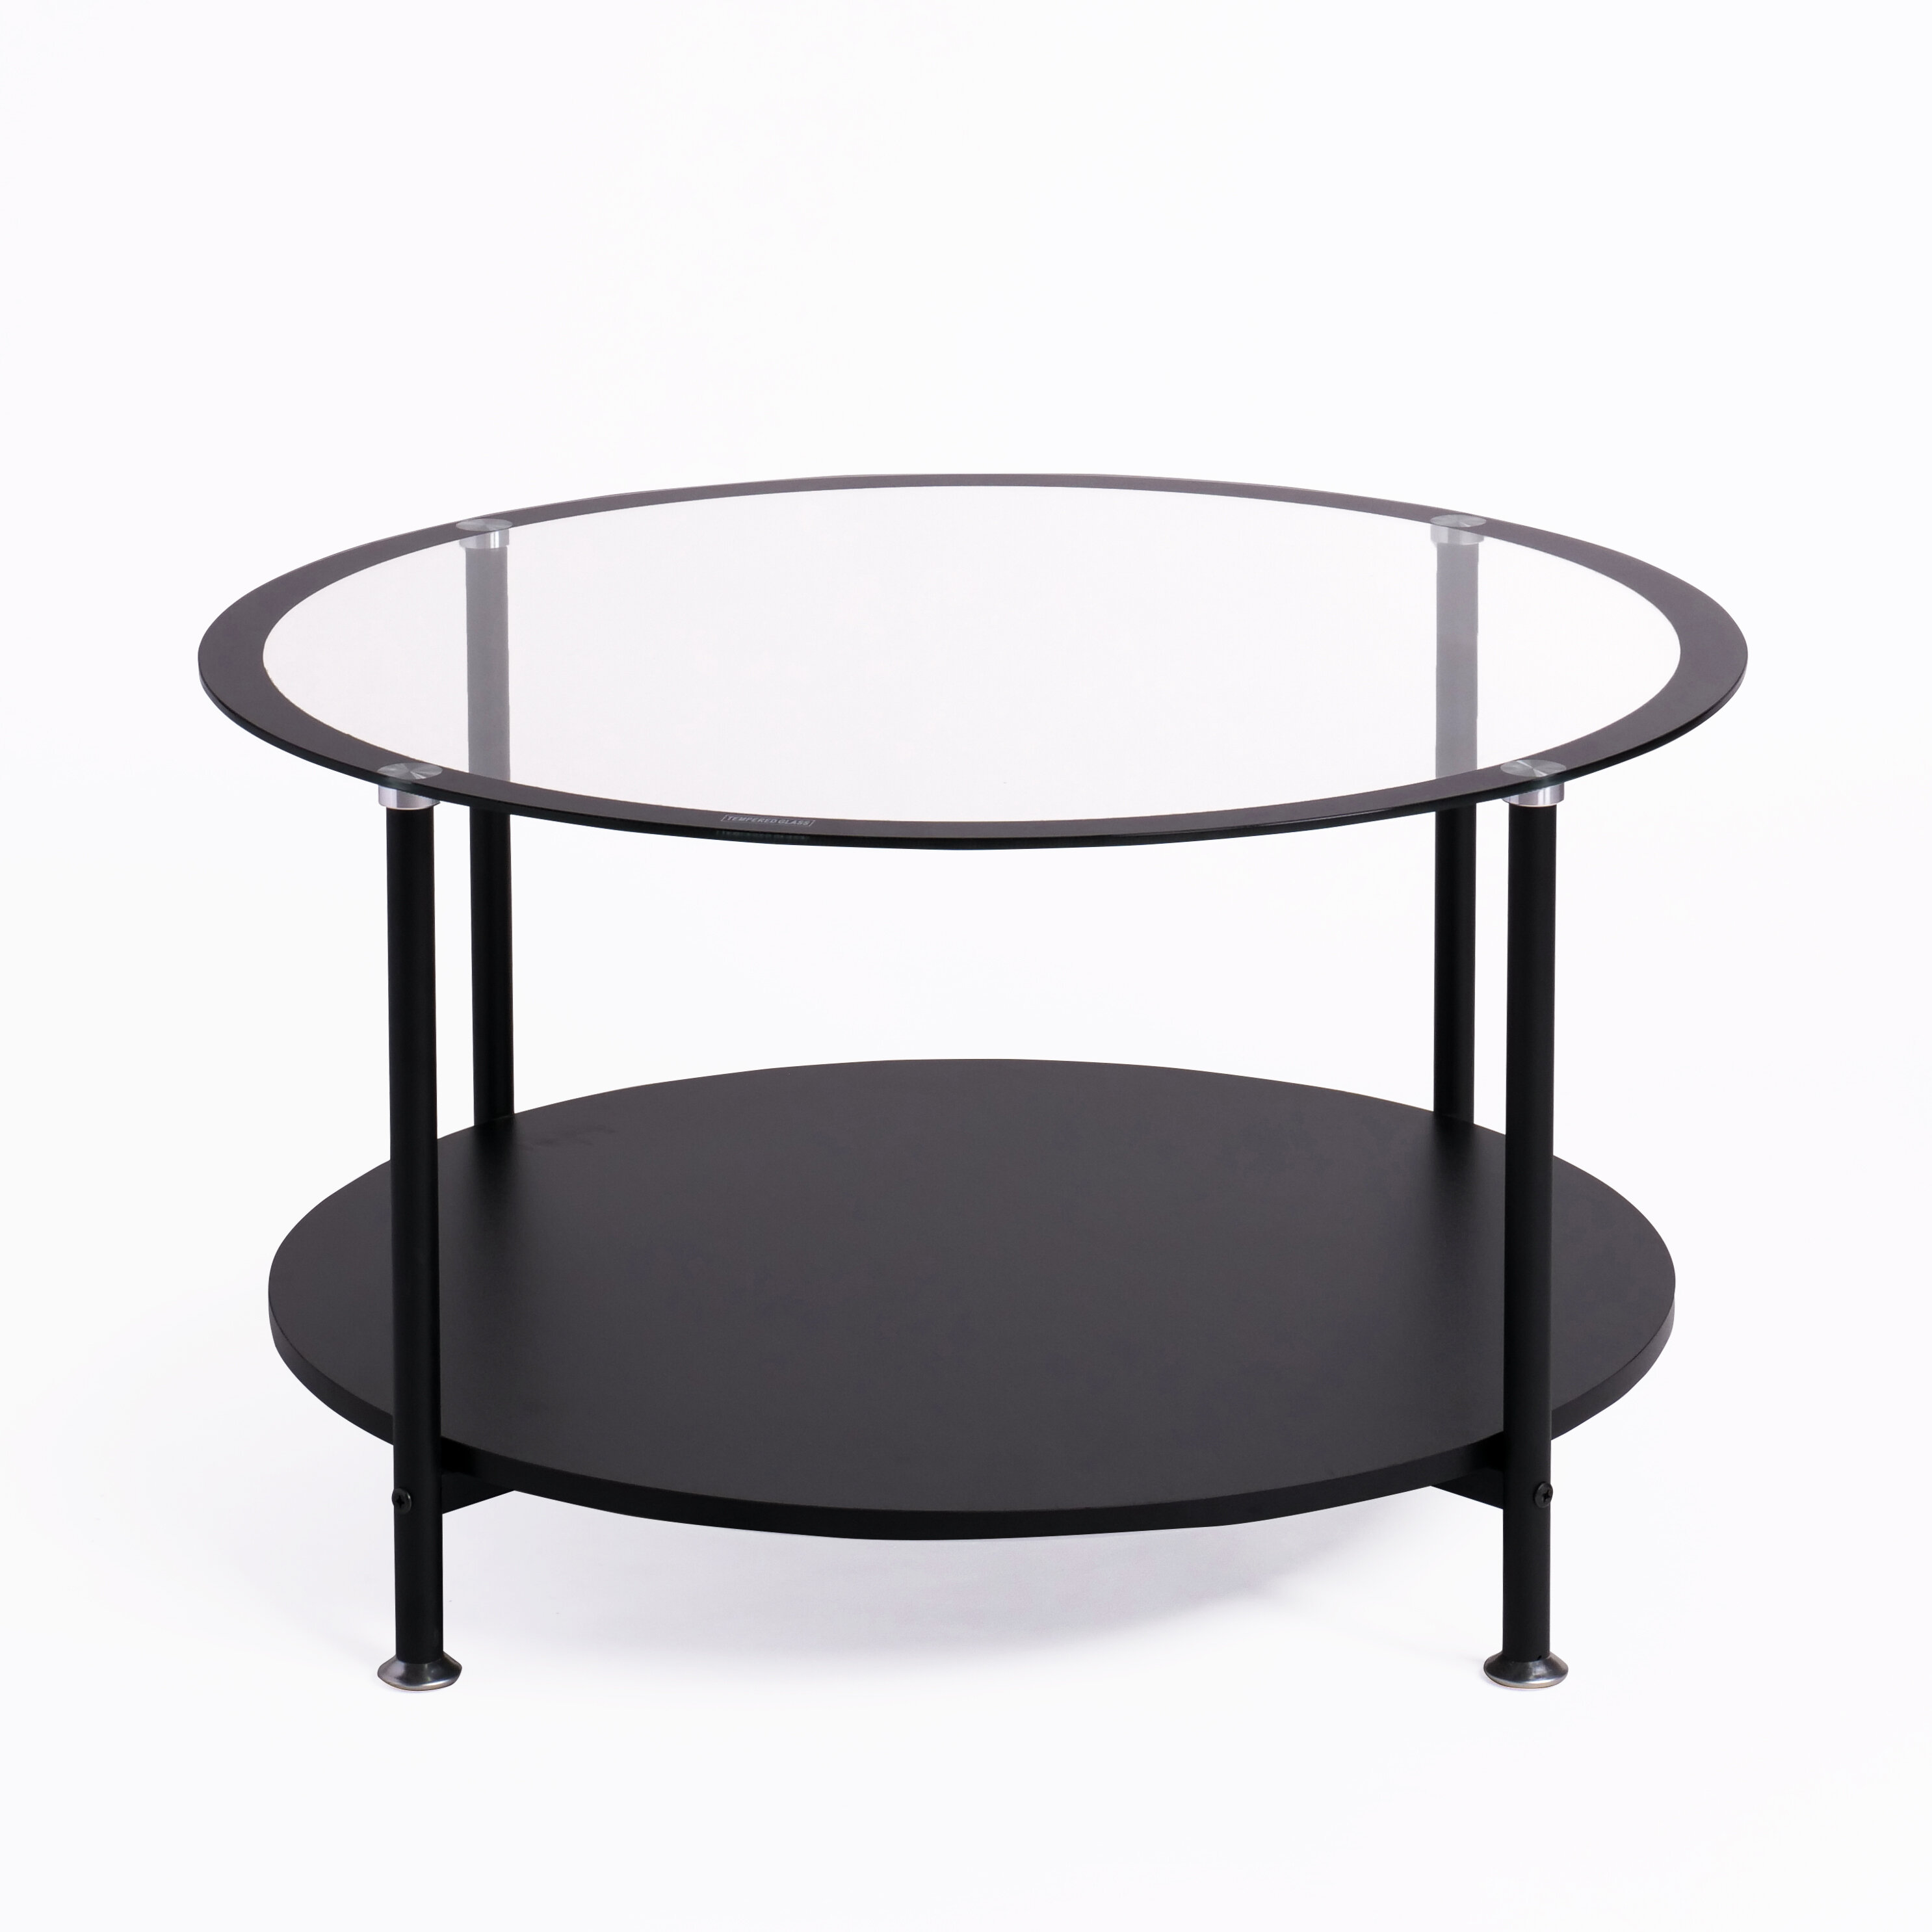 Petite table basse ronde en verre trempé et pied métal Nyna